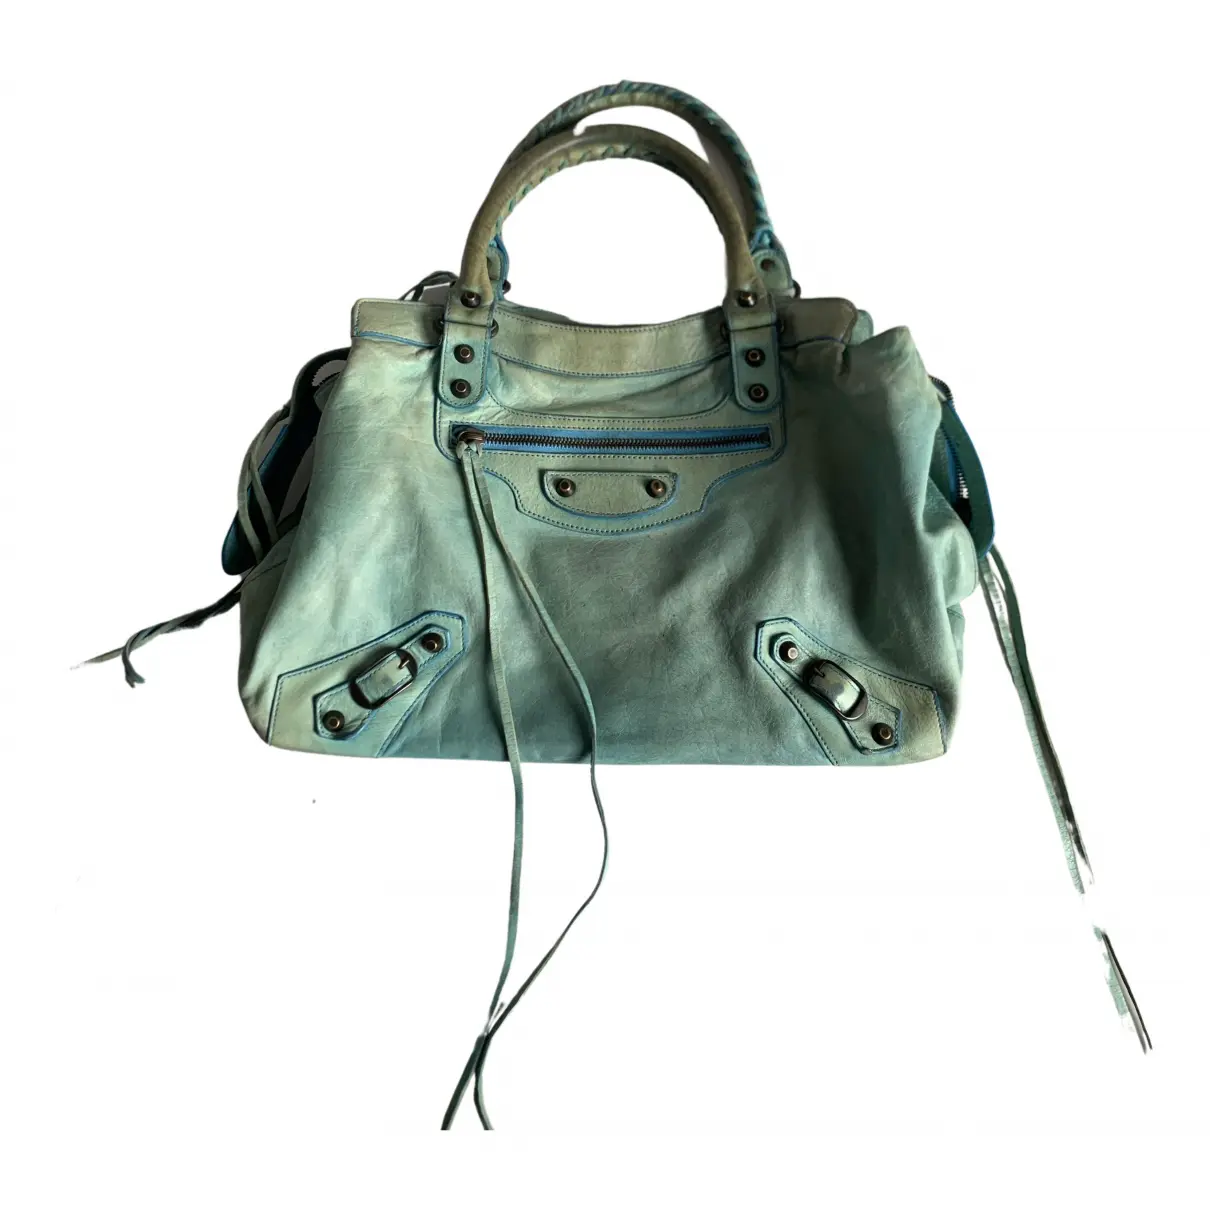 Town leather handbag Balenciaga